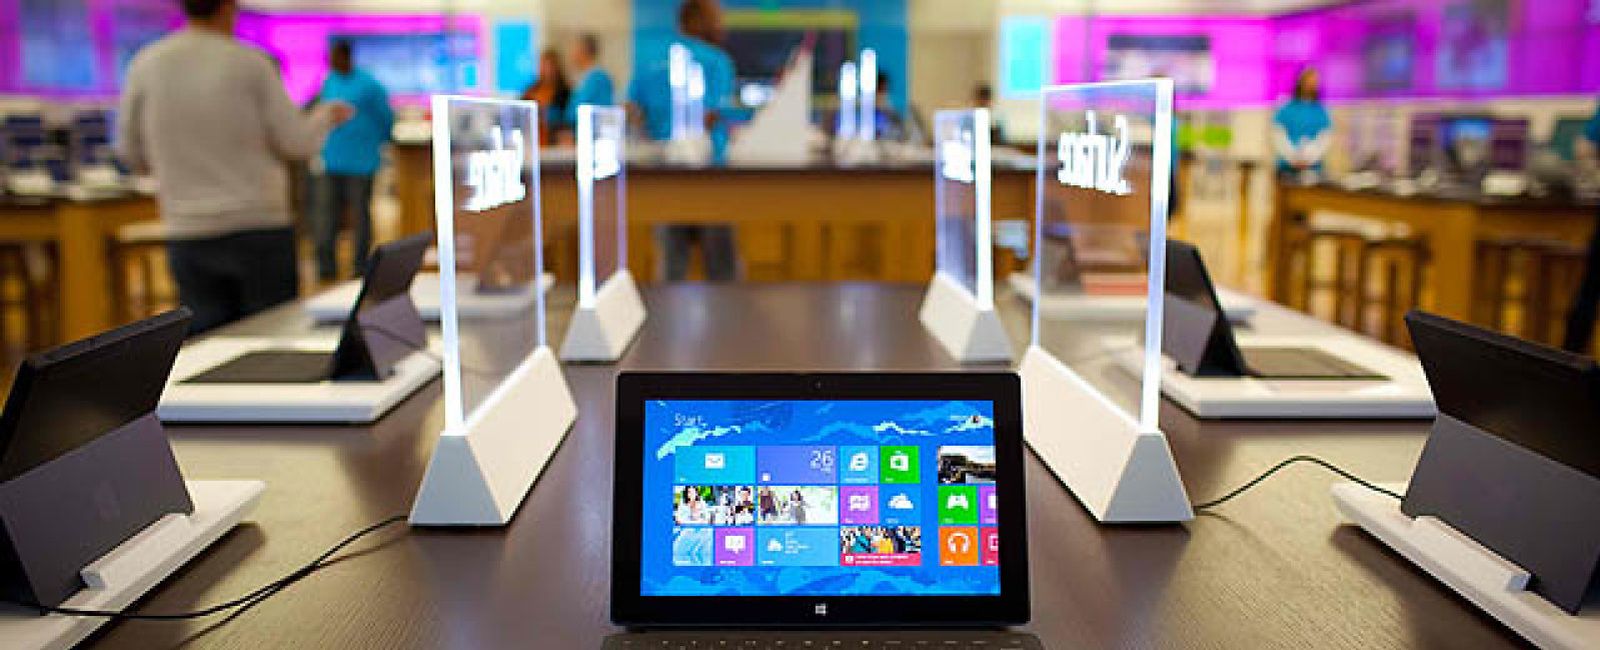 Foto: Microsoft insta en un 'spot' a Apple a "hablar menos y trabajar más"